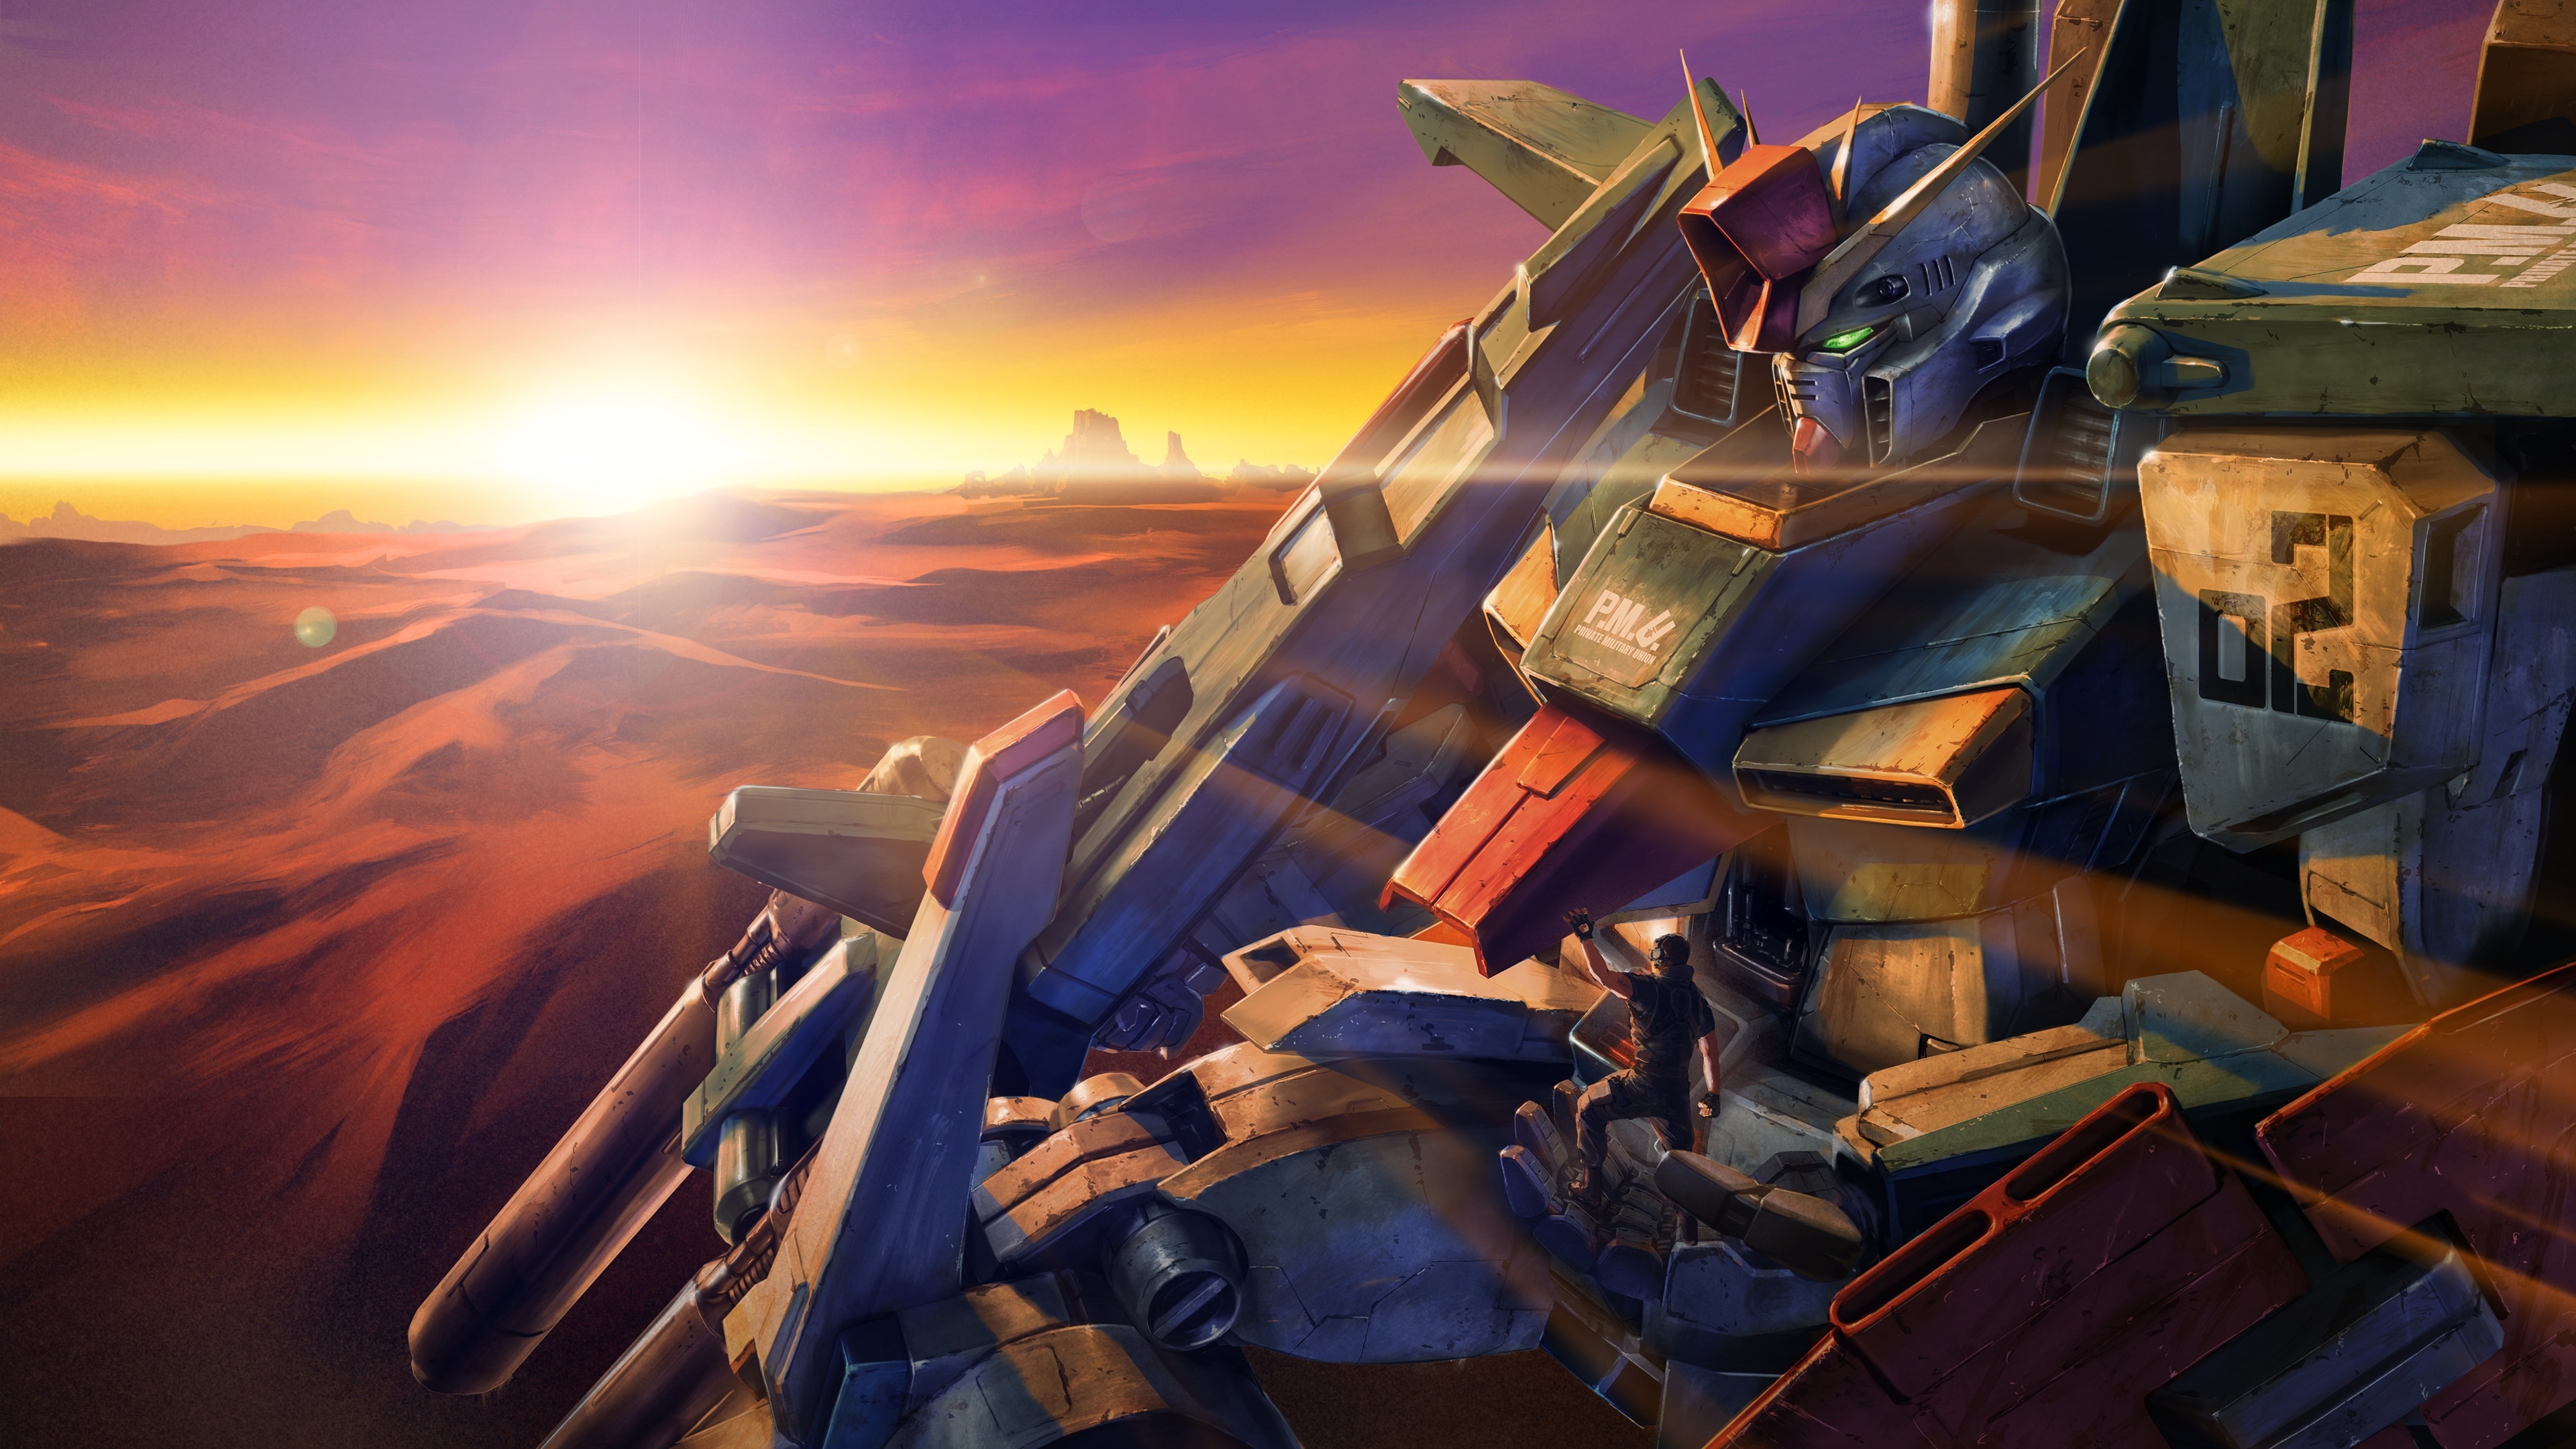 Battle Operation 2, Gundam Wallpaper, 3840x2160 4K Desktop